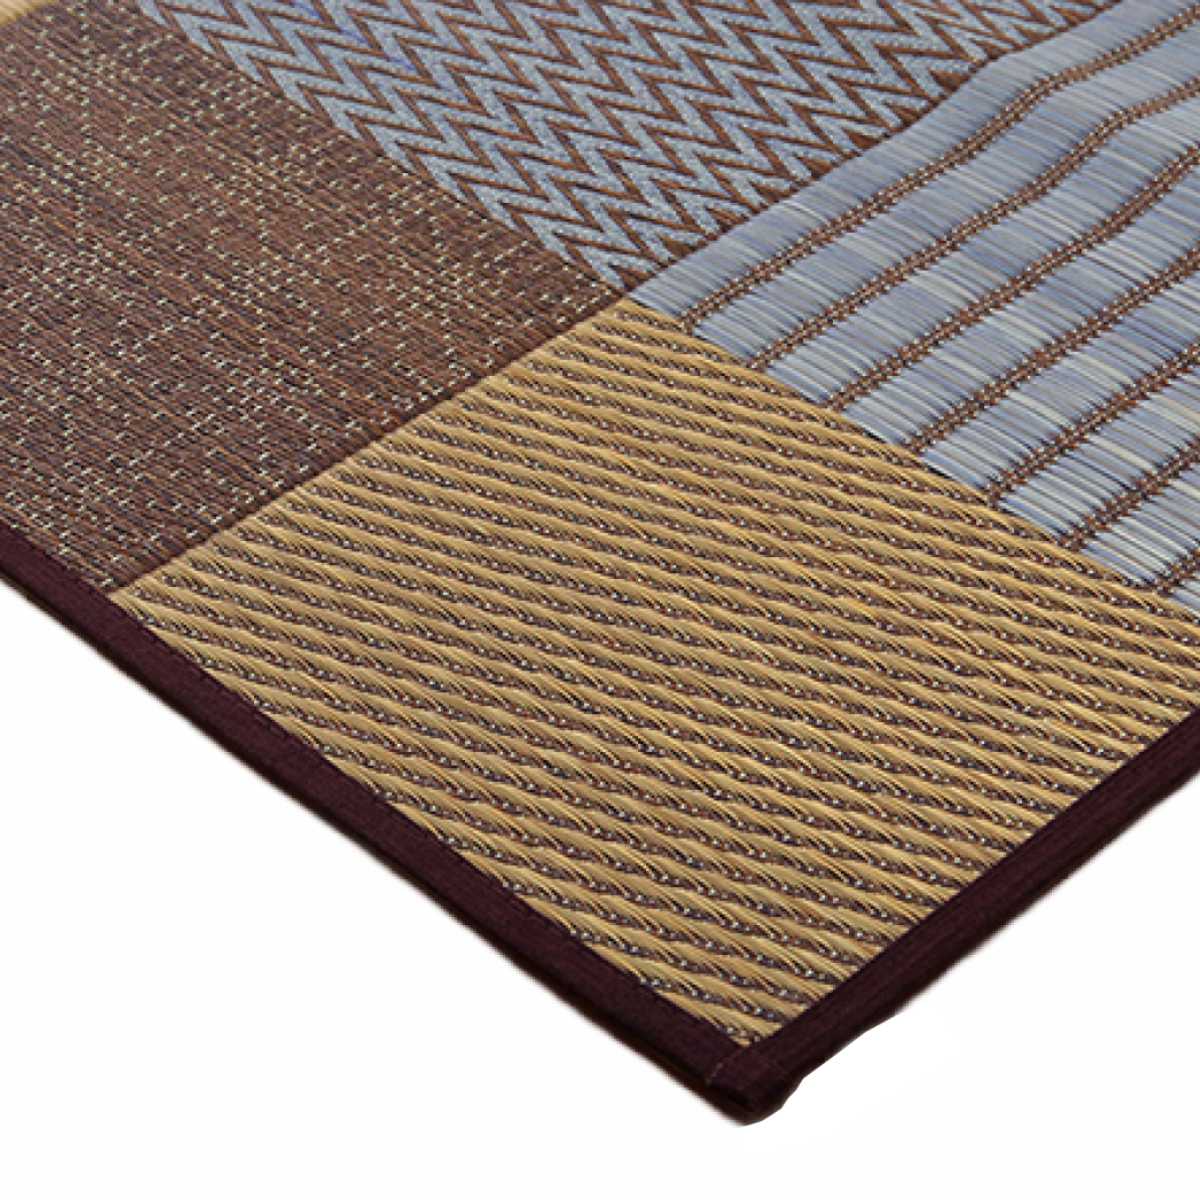 い草上敷き 純国産 袋織 い草ラグカーペット 京刺子 約191×300cm